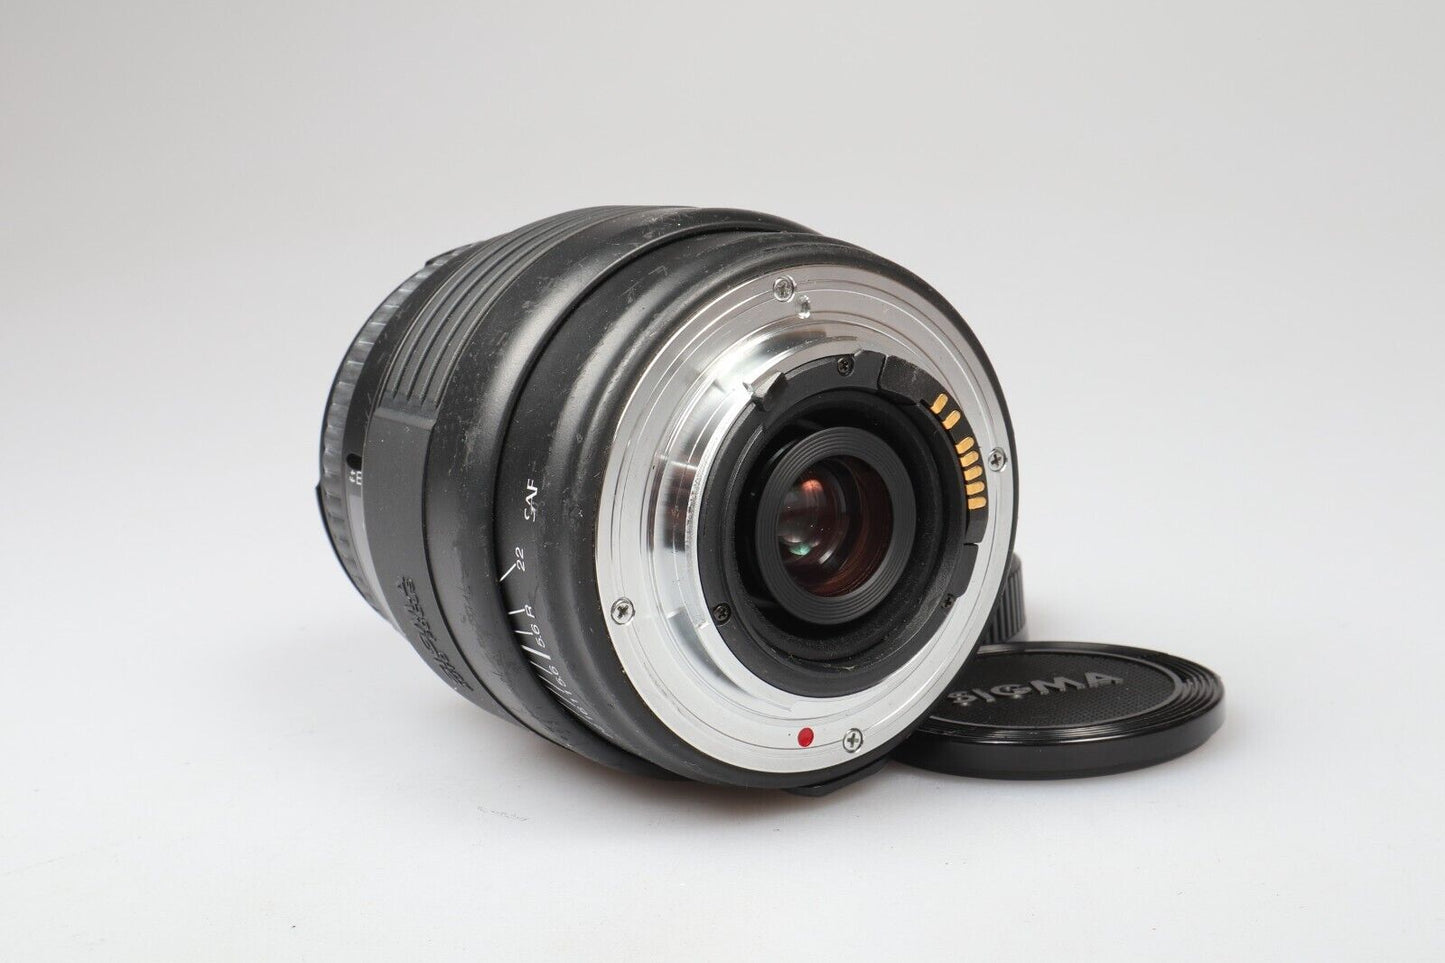 Sigma UC Zoom Lens | 70-210mm f4-5.6 | SA Mount